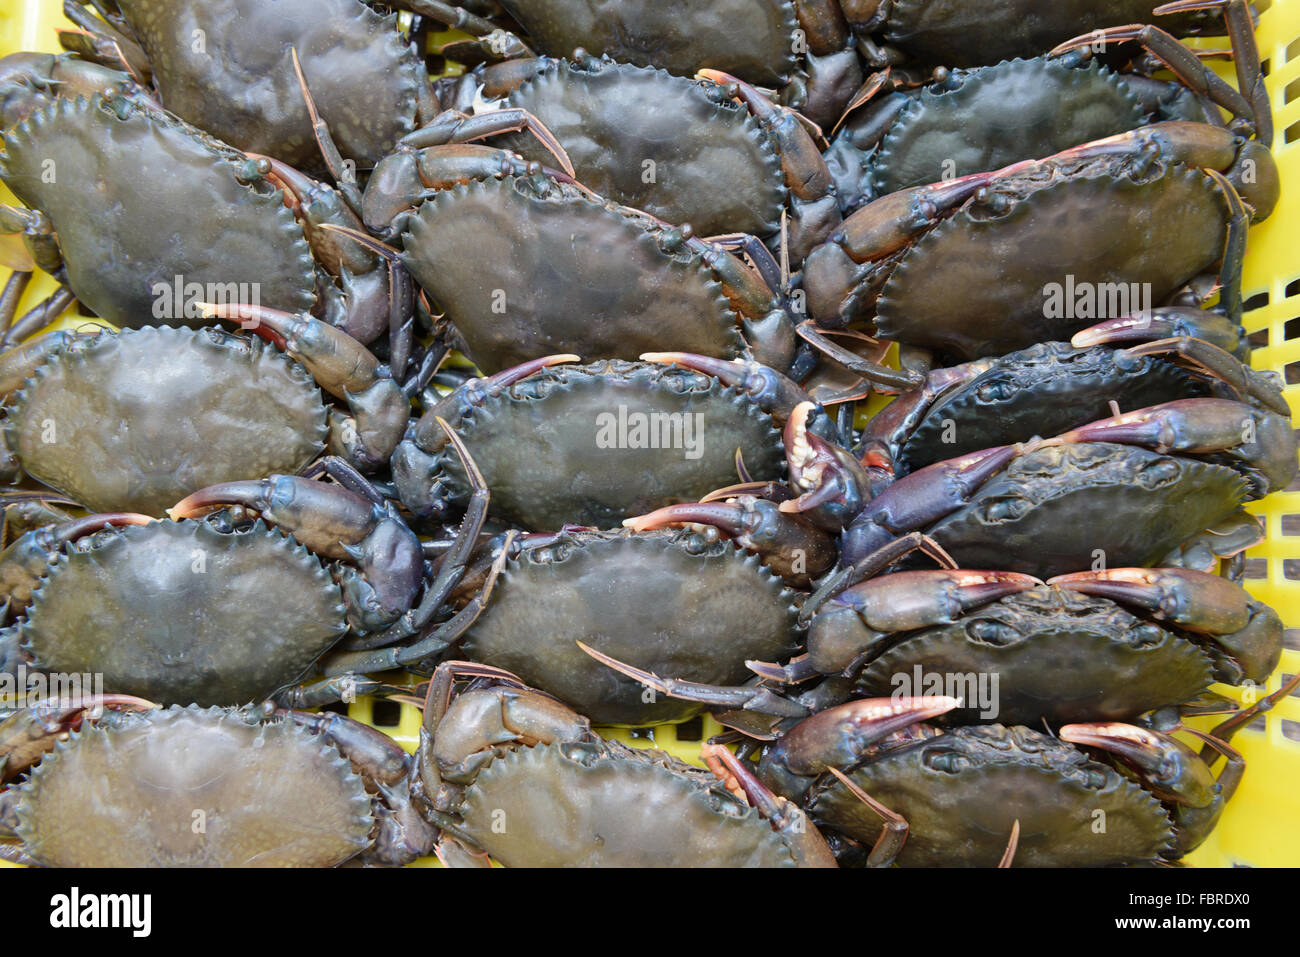 Lebendig Softshell gezahnt Krabbe, schwarze Krabbe oder Mangroven Krabben. Sie haben sich nur ihre alten Exoskelett gemausert Stockfoto